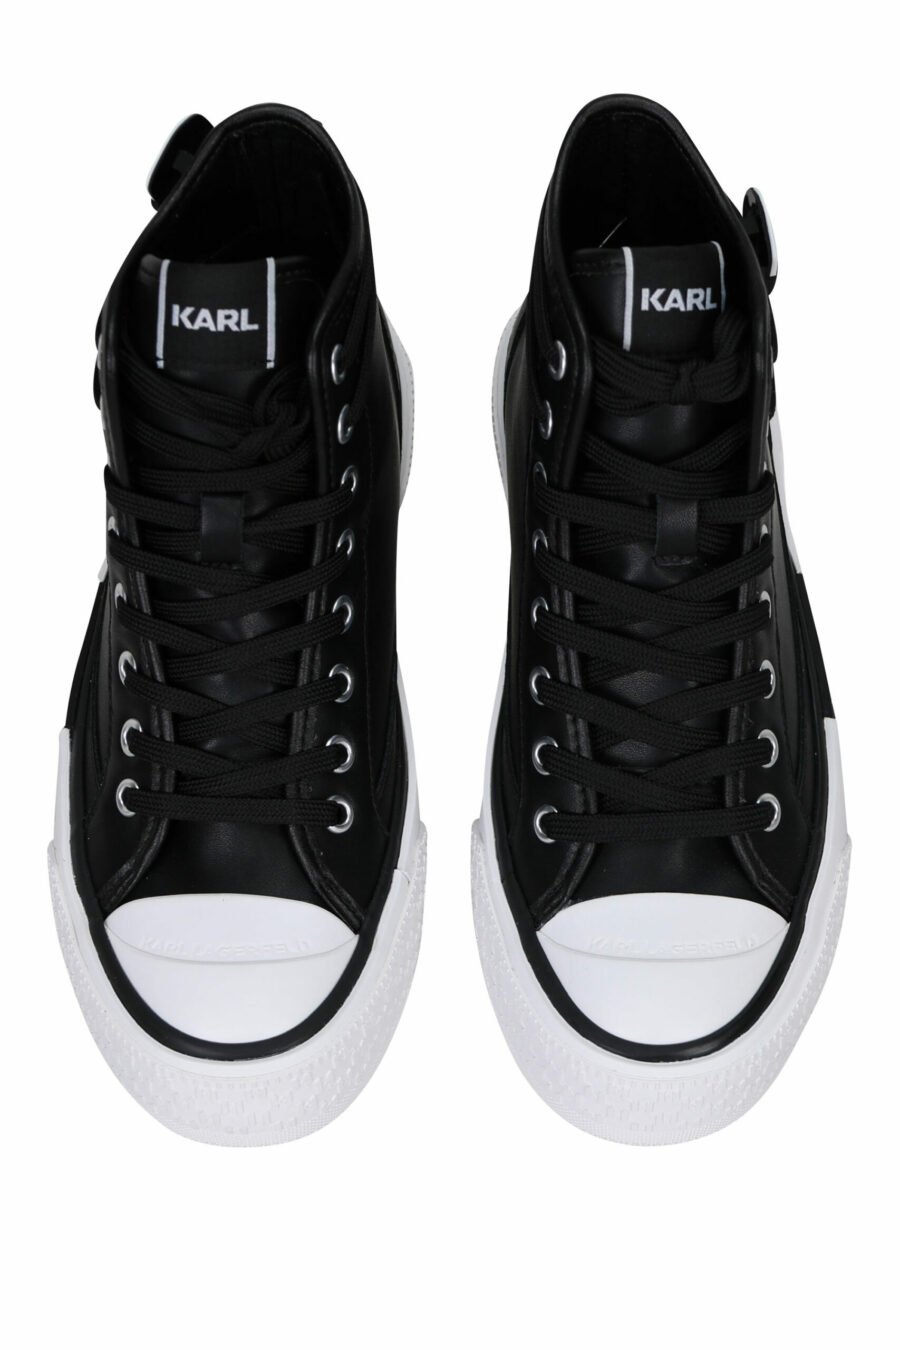 Zapatillas negras altas de cuero con suela blanca y logo "karl" - 5059529355905 4 scaled